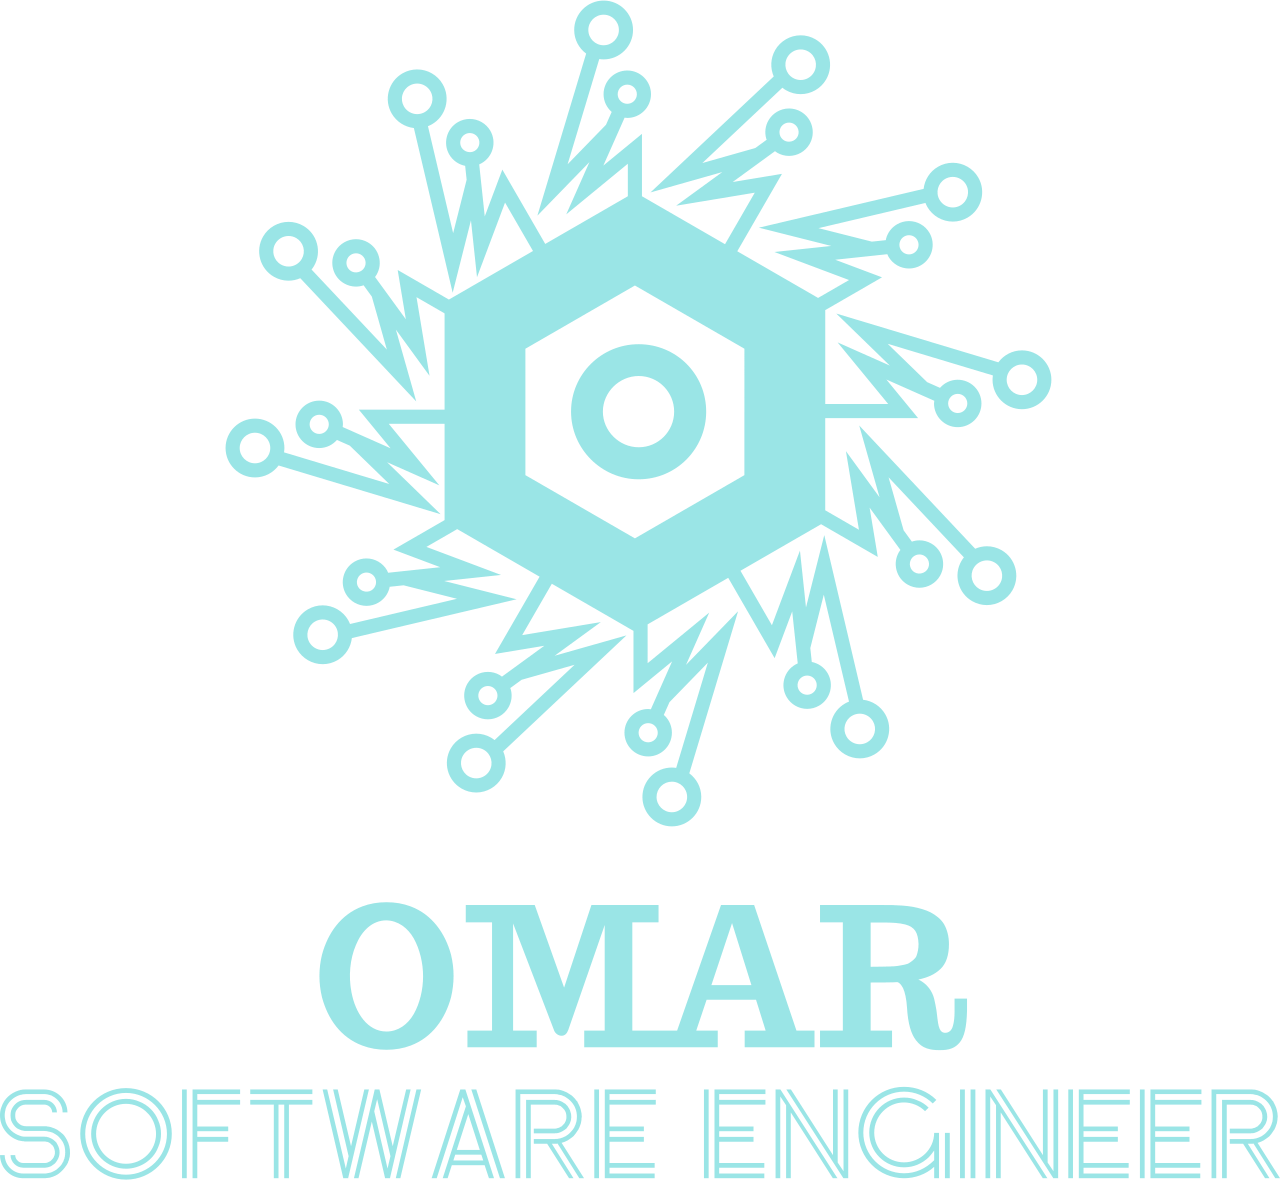 OMAR's logo